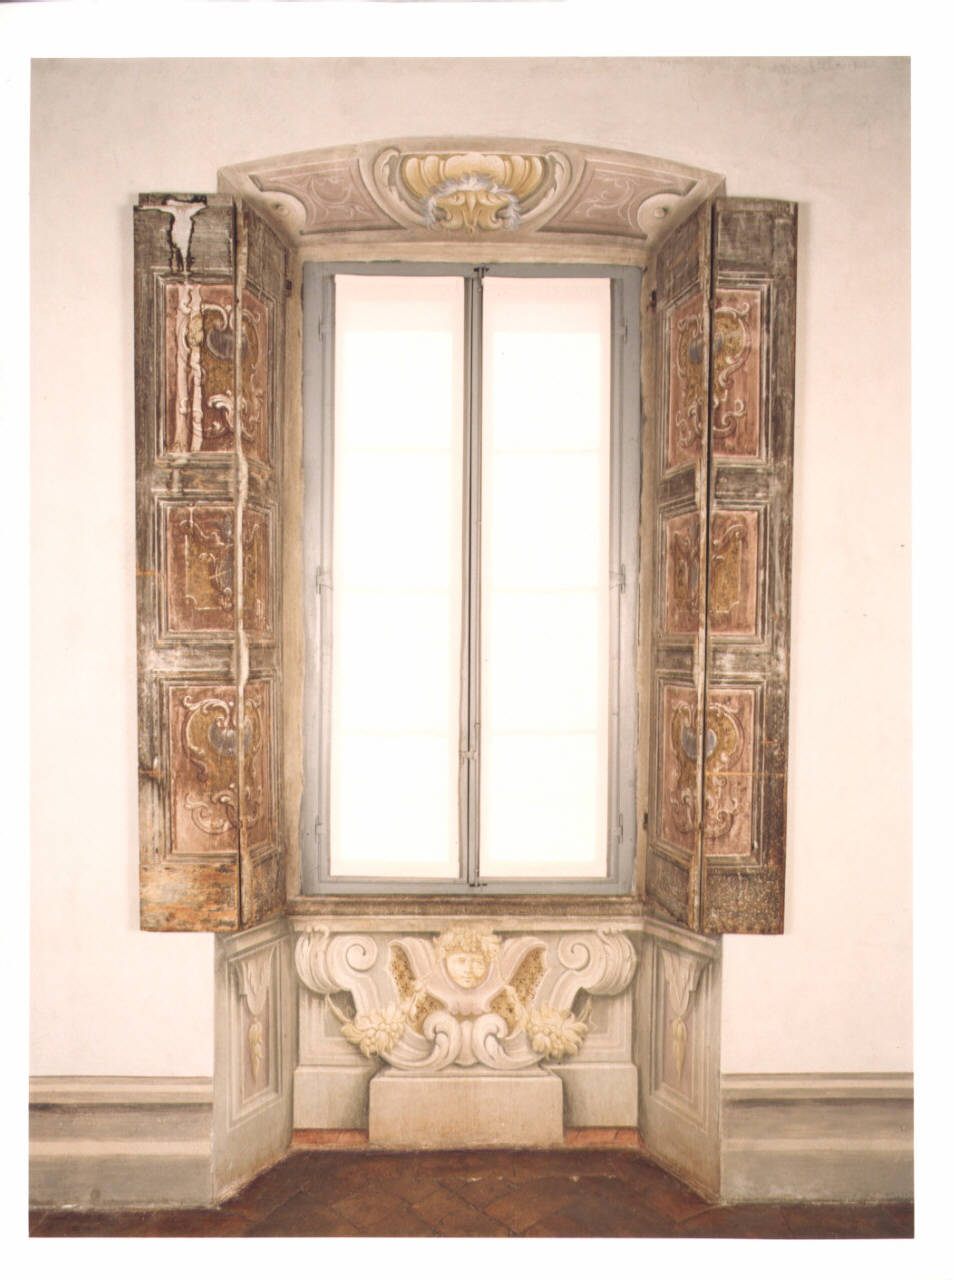 Motivi decorativi con frutti (finestra strombata) di Ronchelli Giovan Battista (e aiuti) (seconda metà sec. XVIII)